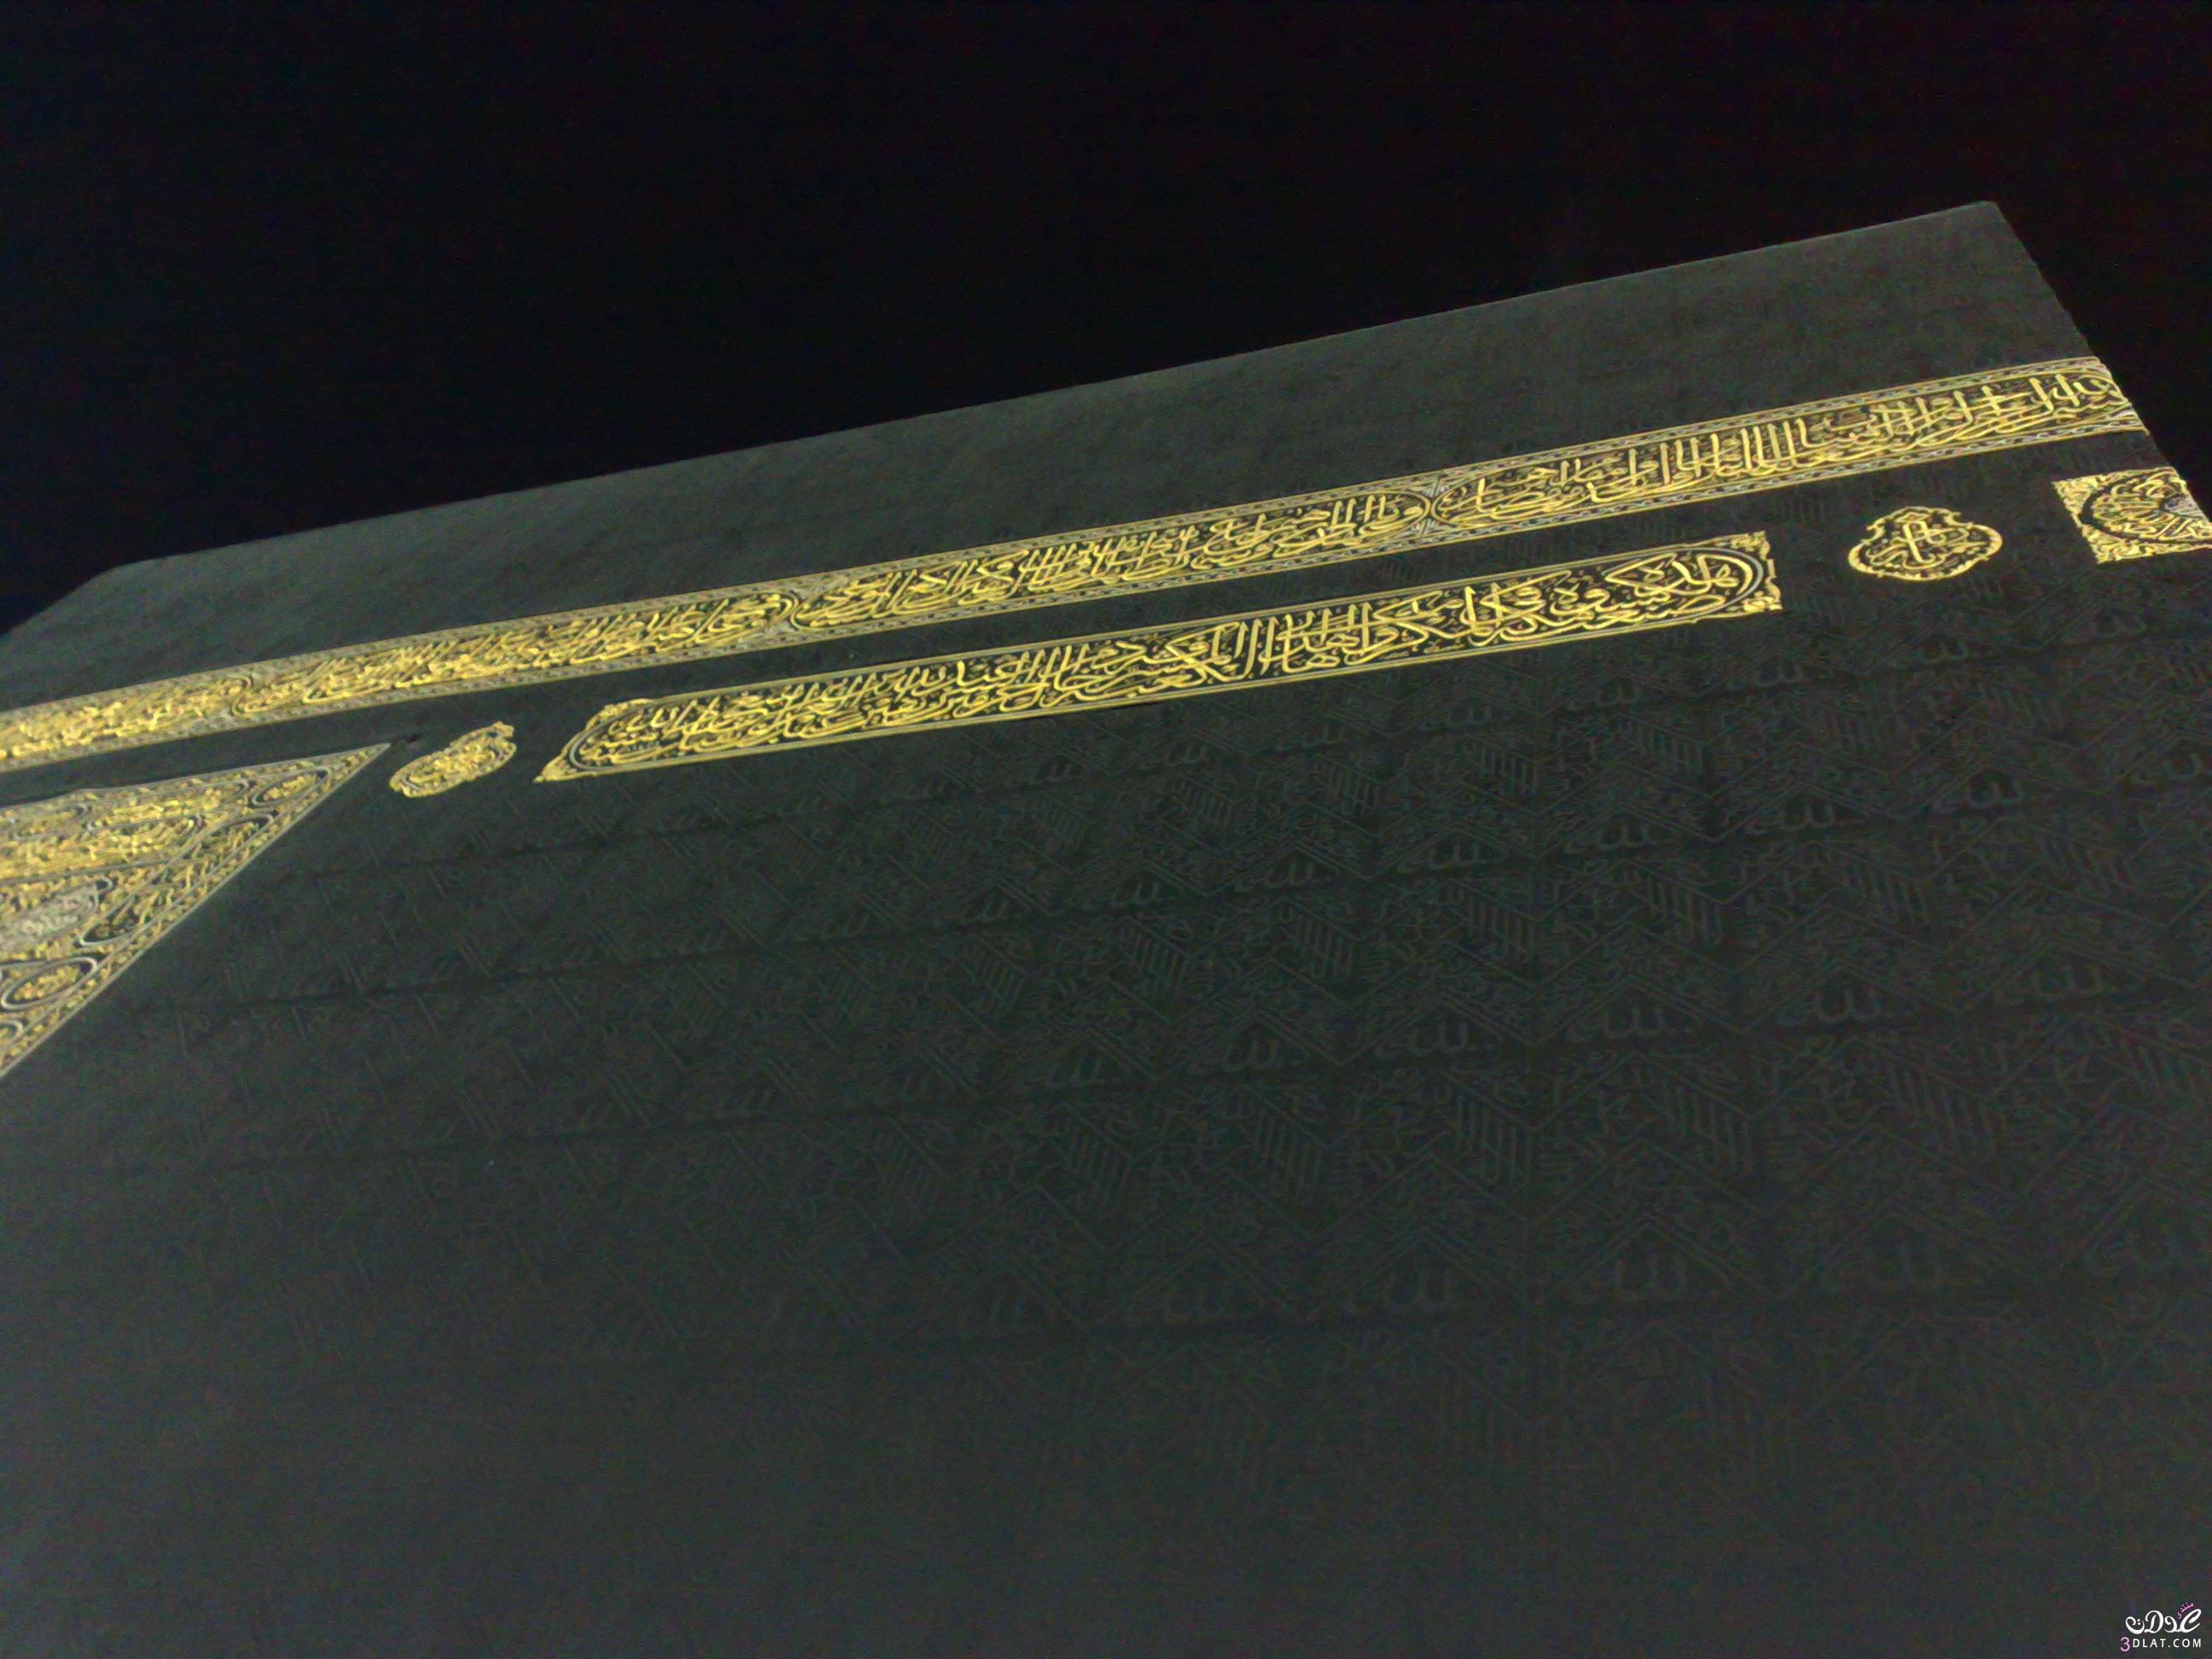 صورللكعبة المشرفة بمكة المكرمة بالمسجد الحرام